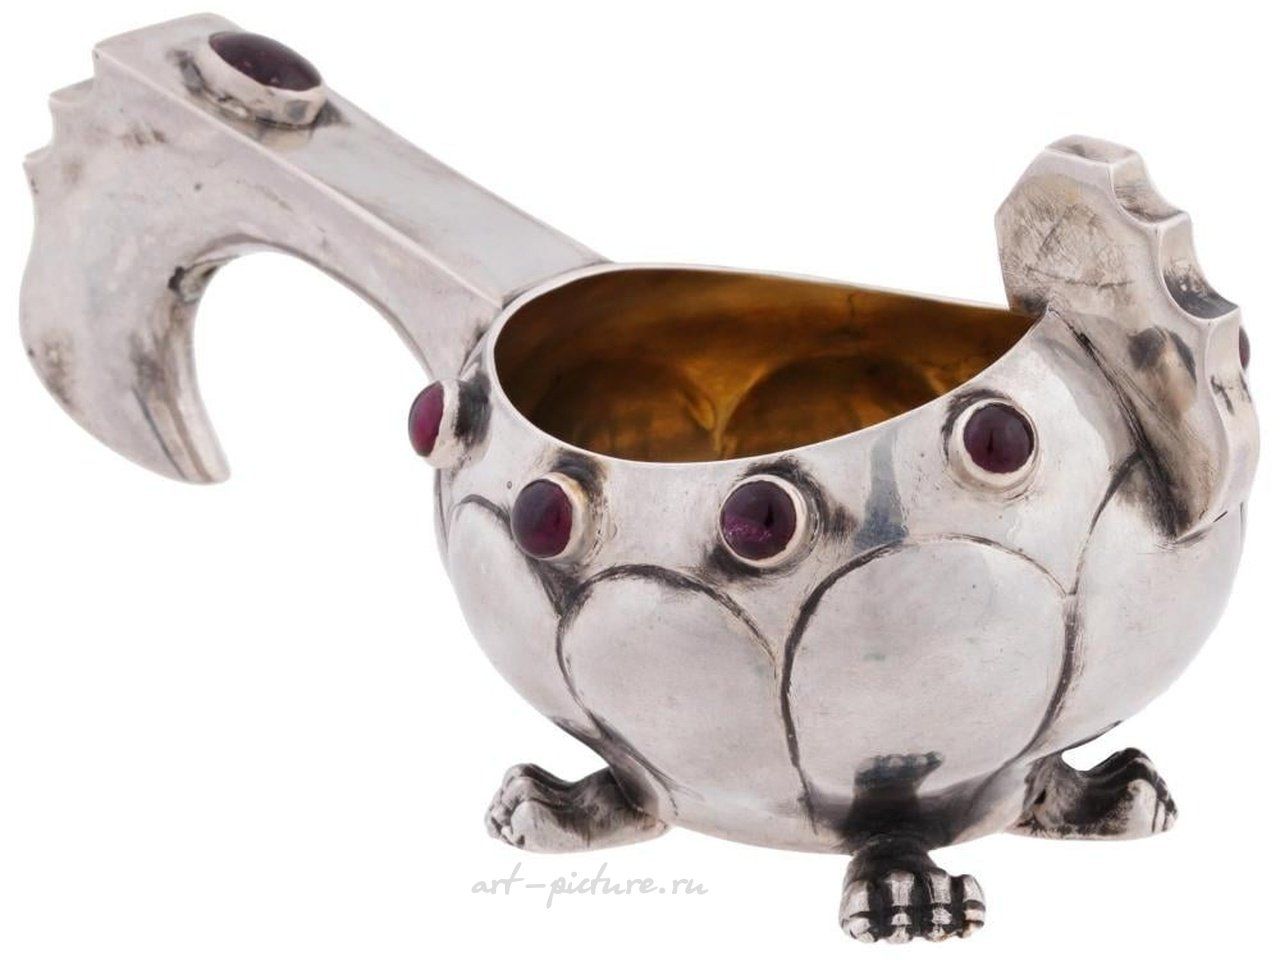 Русское серебро , Русская серебряная чаша с фигурными камнями лазурита